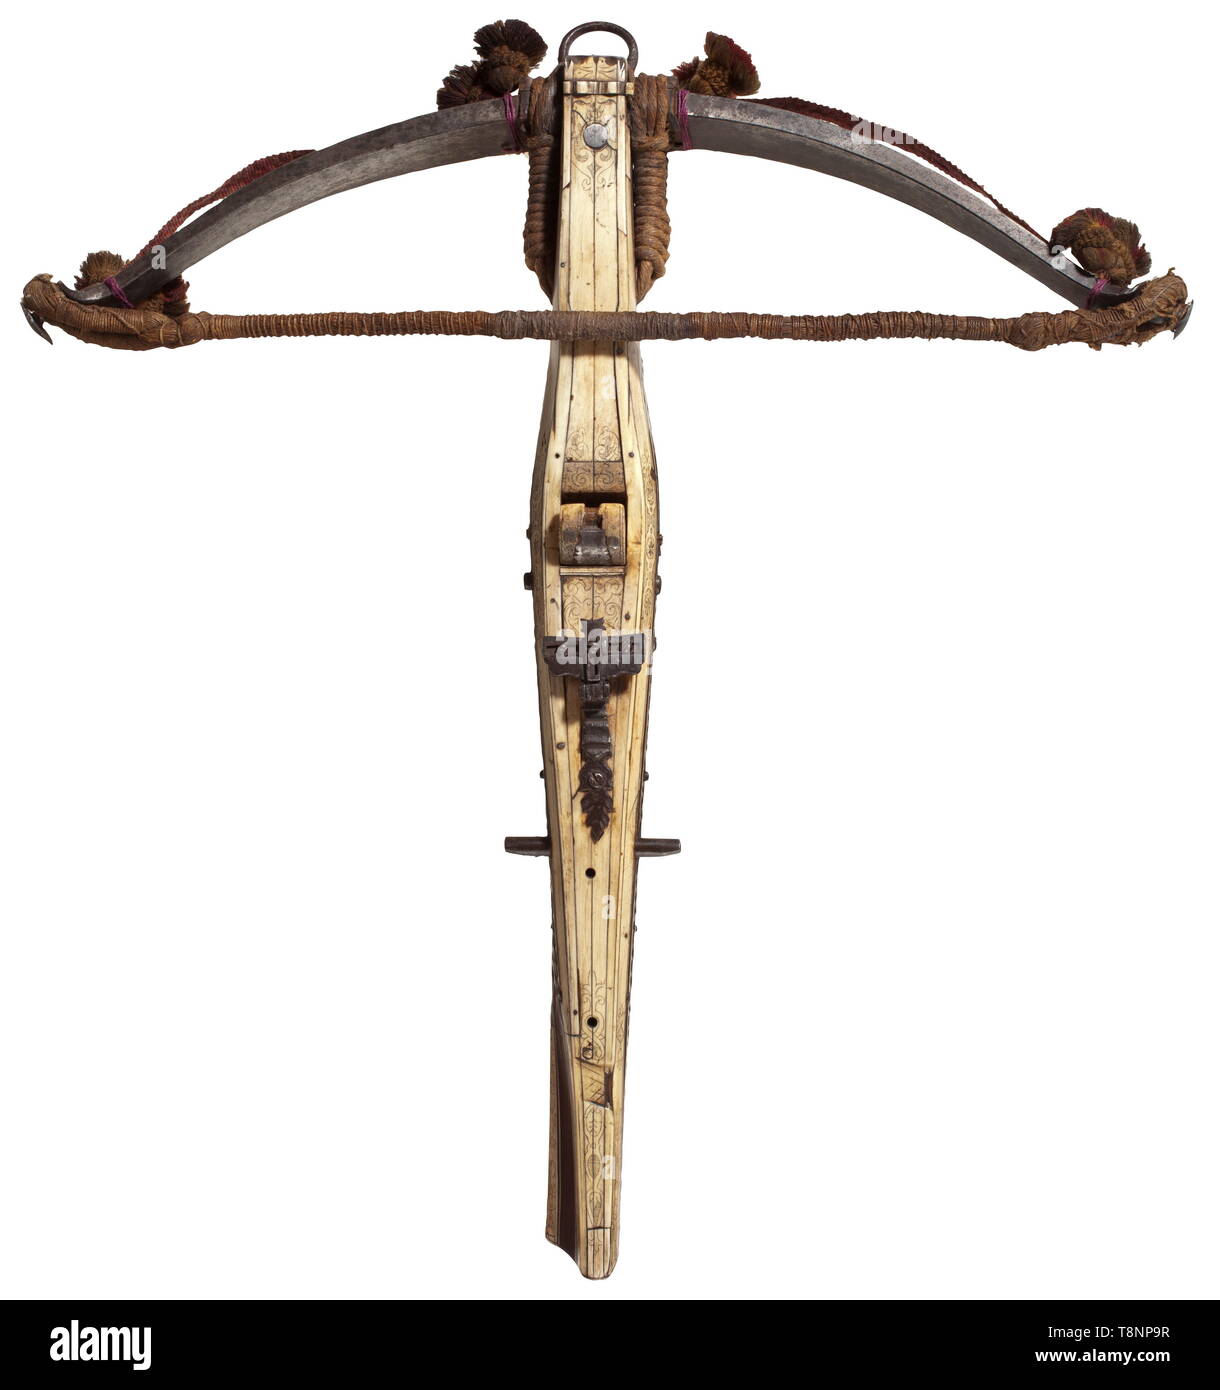 Eine Deutsche Jagd Armbrust, 17. Jahrhundert Heavy Iron prod mit einem  gewebten Lanyard und Kammgarn Quasten, Troddeln, Oliven, Nüsse, später Hanf  Bogensehne, durch Kordeln beibehalten. Leicht verdickten Lenkstange mit  Schnitzereien an den